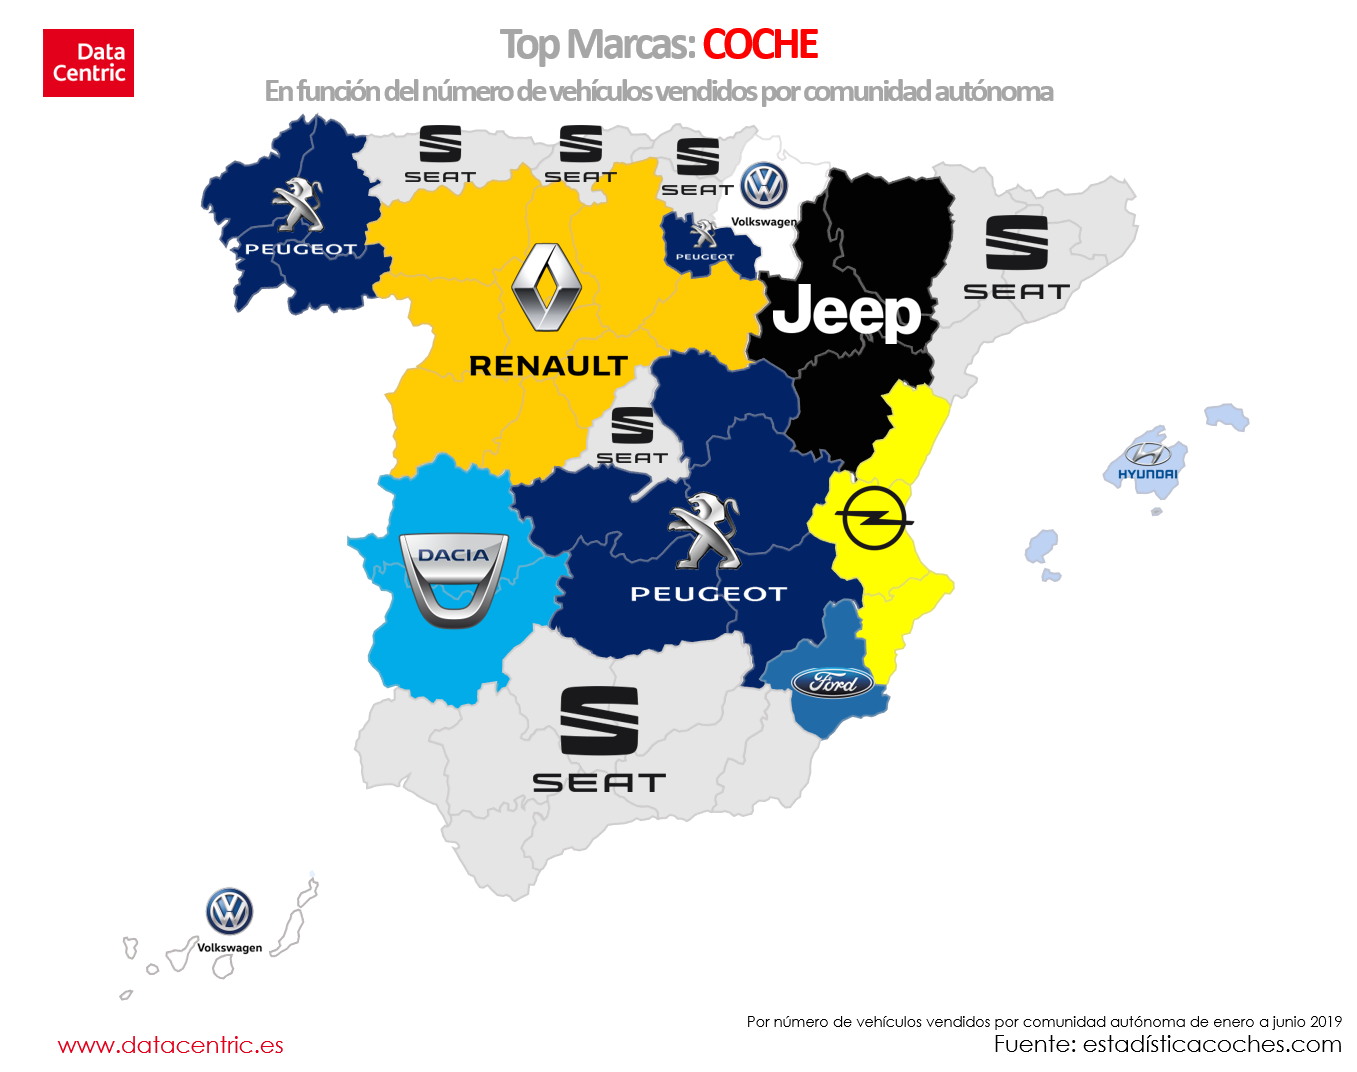 Mapa de top marcas de COCHE en España